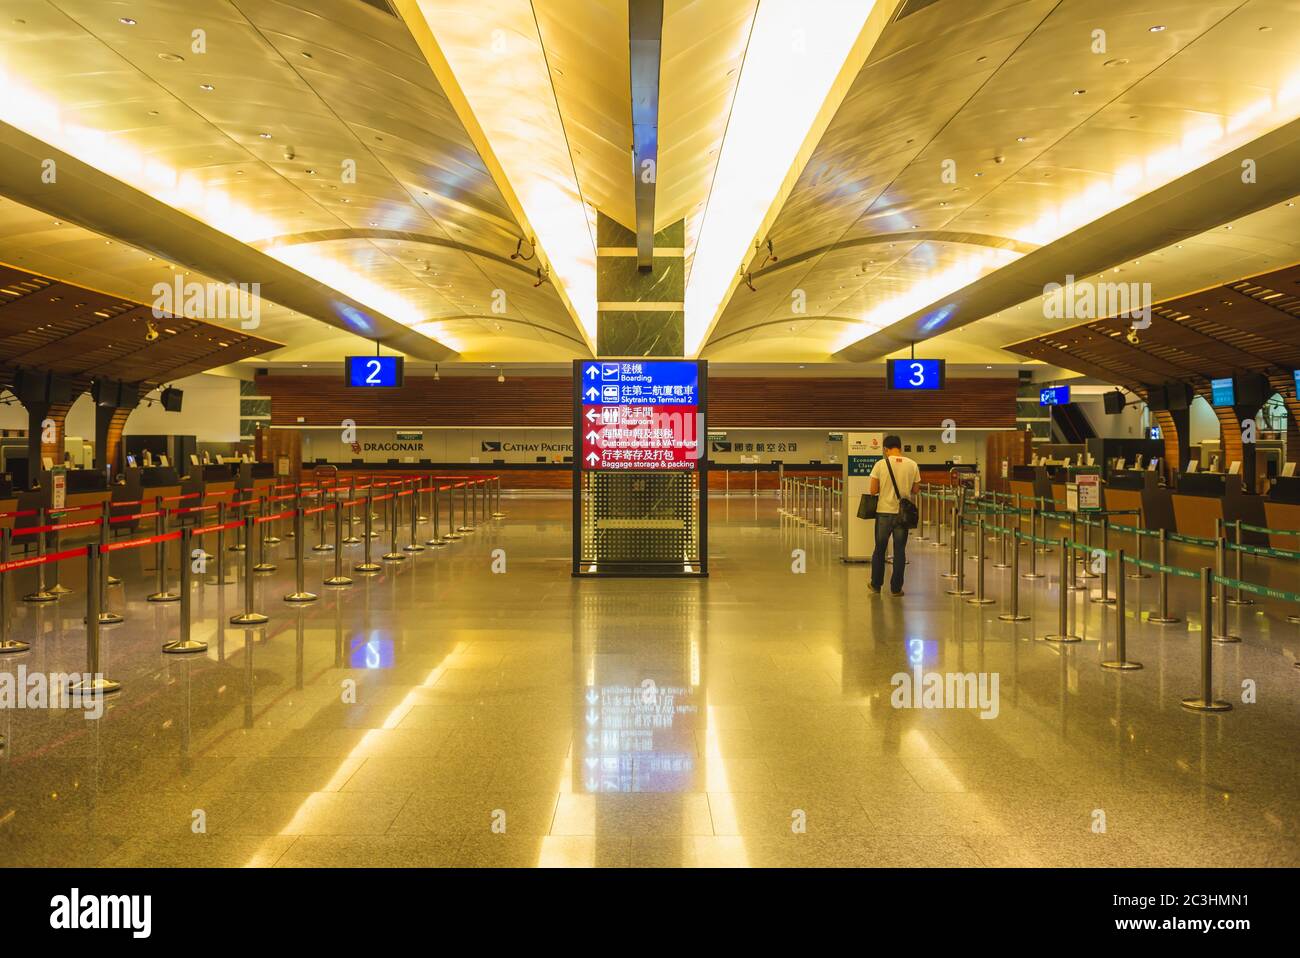 Taoyuan, Taiwan - 15. Juni 2015: Leerer Taoyuan International Airport Check-in Schalter. Dieser Flughafen ist Taiwans größter und verkehrsreichster Flughafen eröffnet Stockfoto